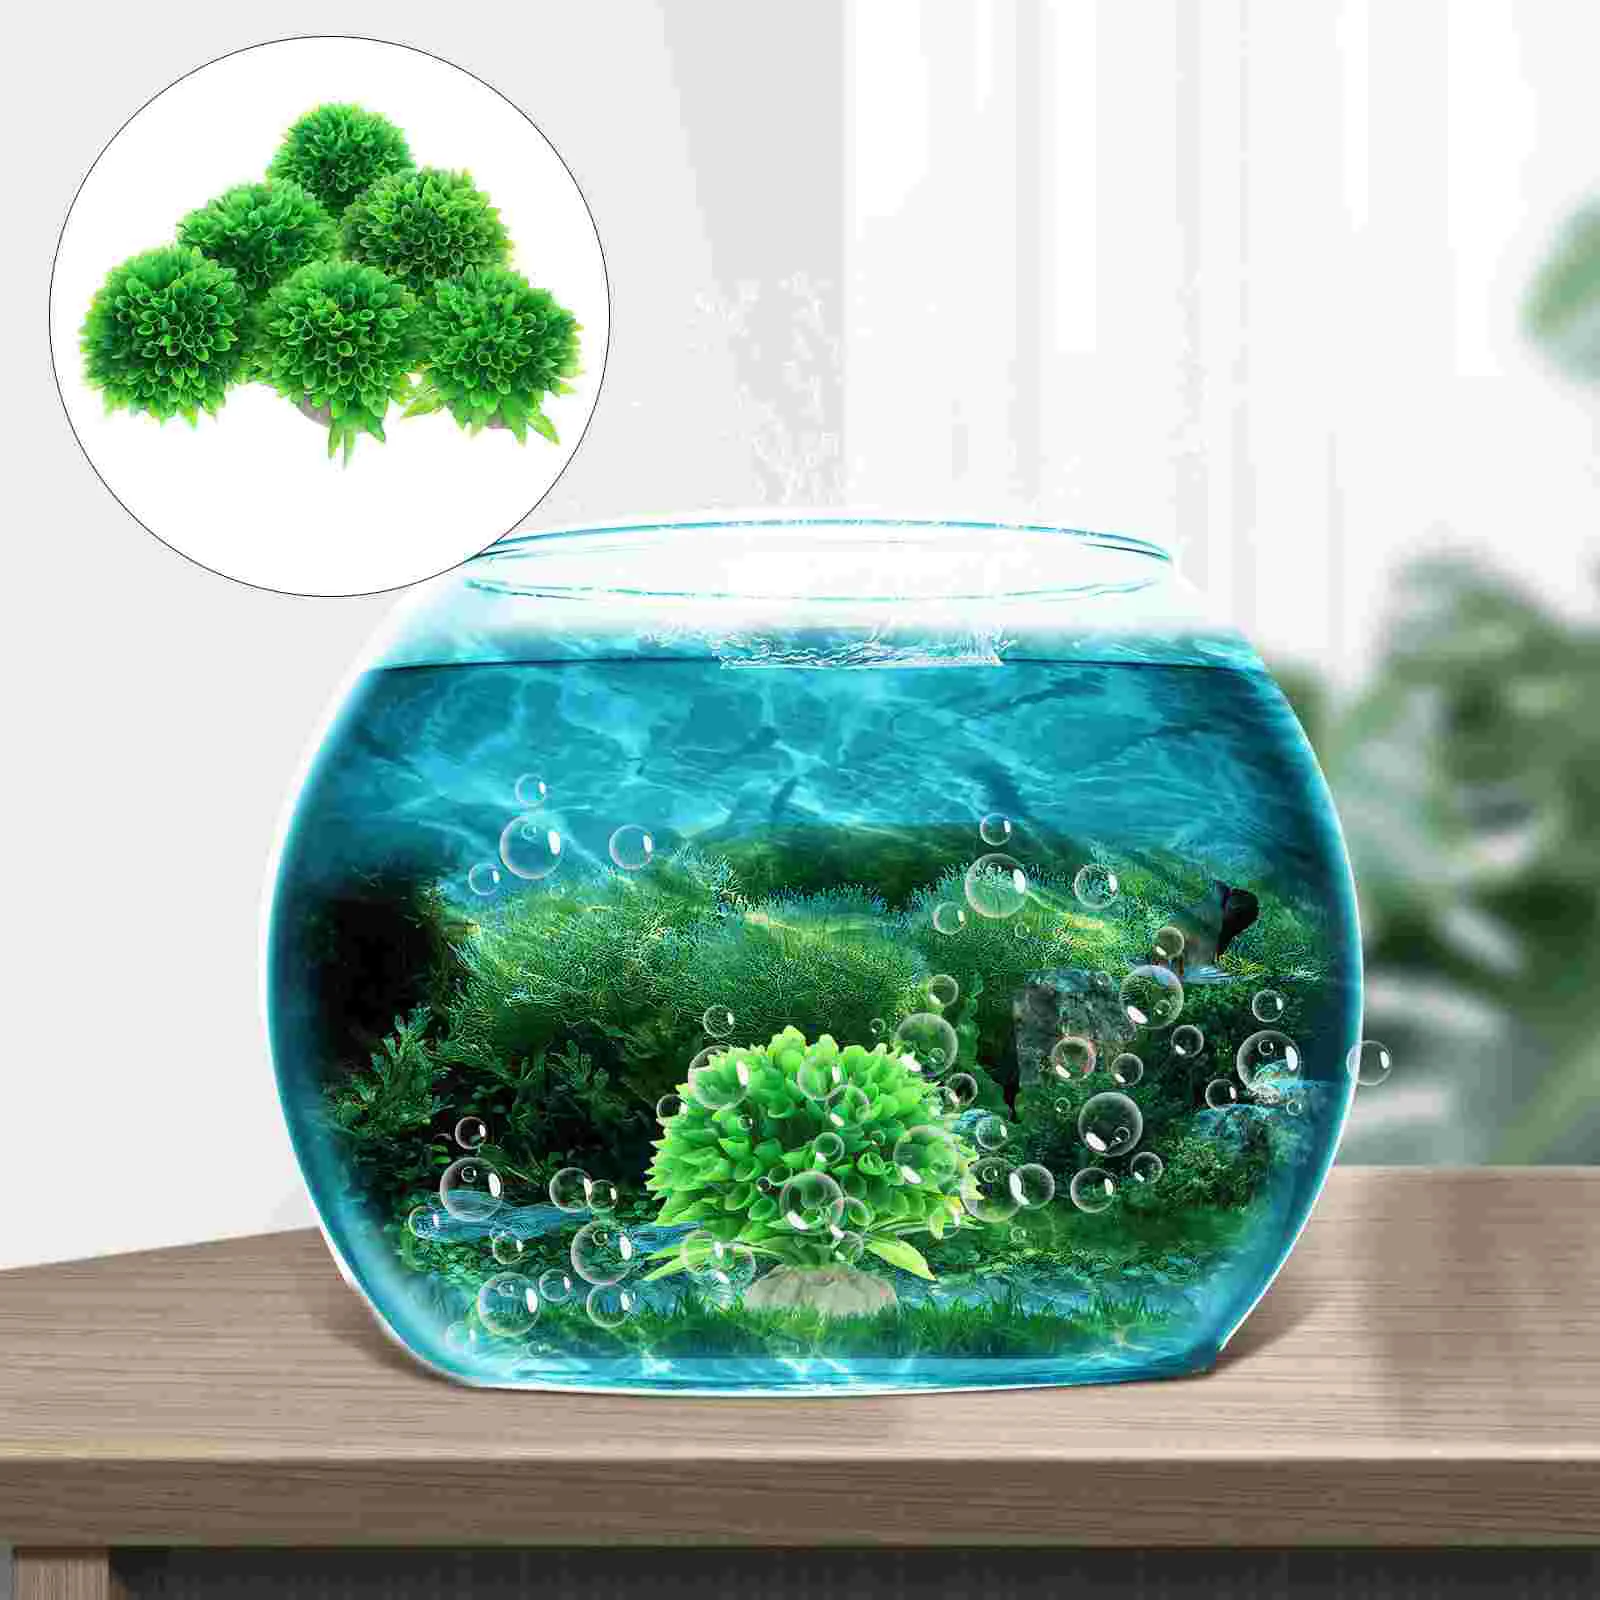 

6 Pcs Aquarium Ornaments Plant Fish Tank Aquatic Decorative Tree Twig Plastic Plants Fake Decors Tropical Decoration